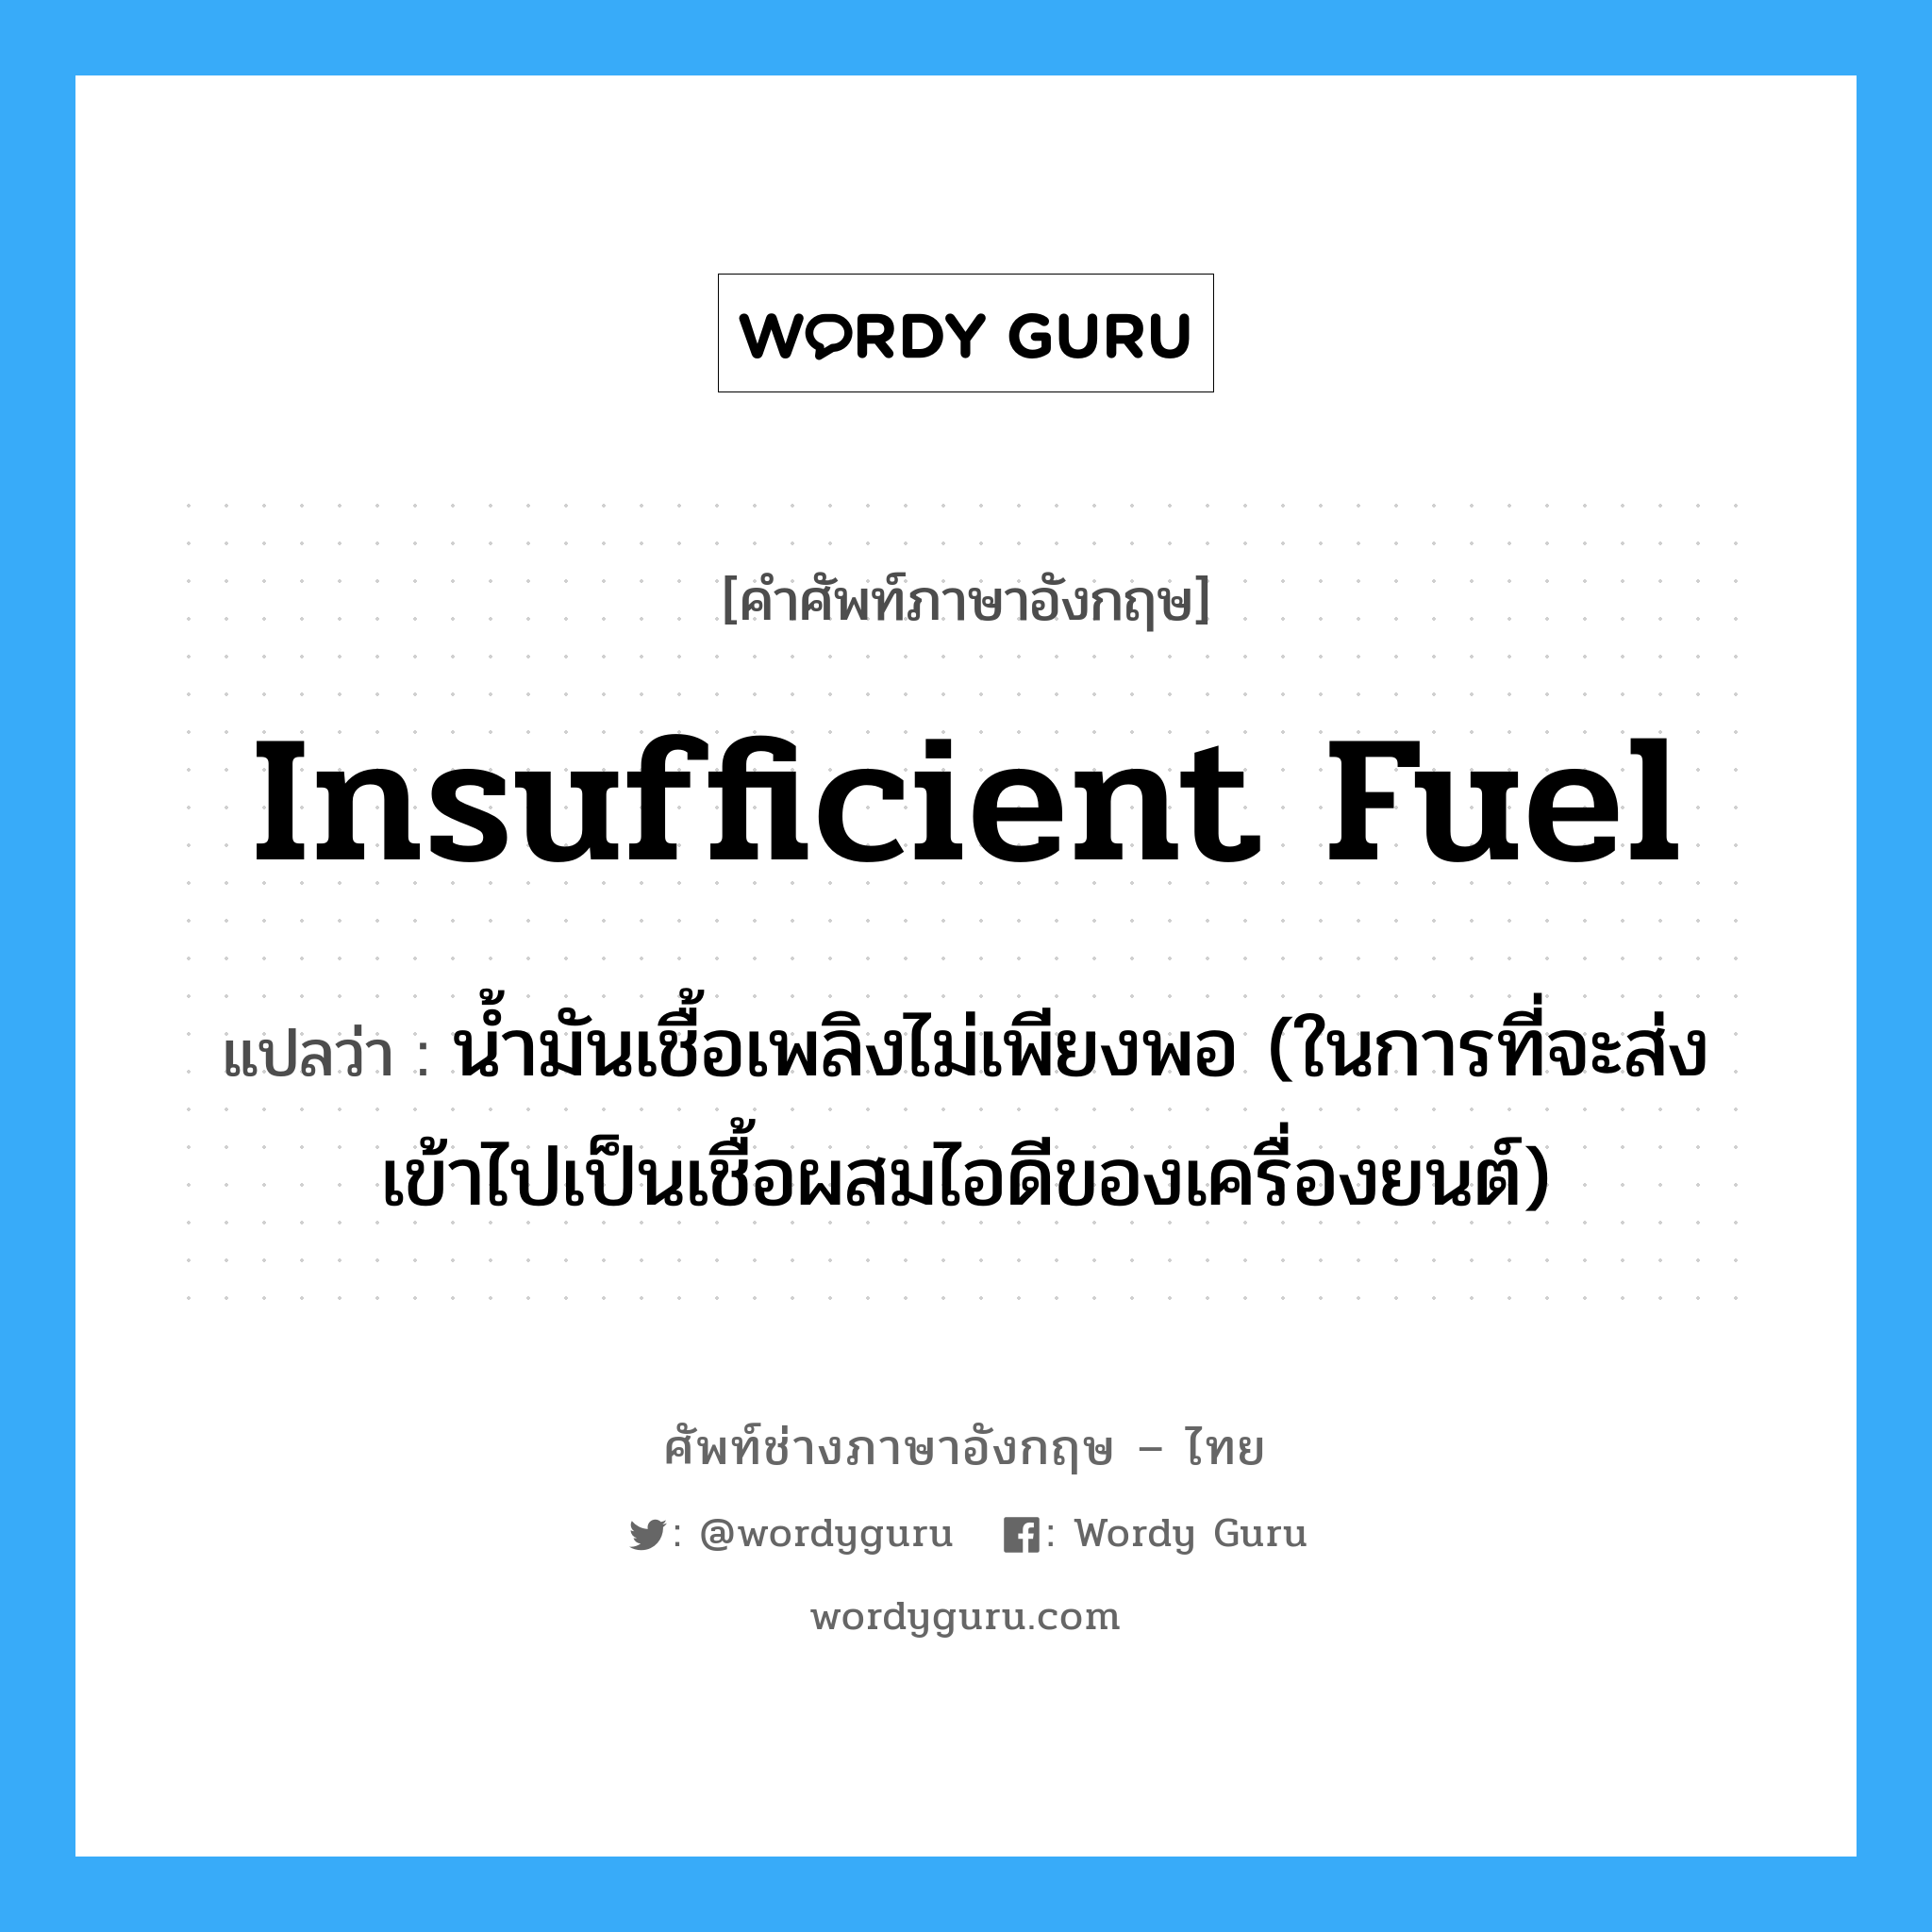 insufficient fuel แปลว่า?, คำศัพท์ช่างภาษาอังกฤษ - ไทย insufficient fuel คำศัพท์ภาษาอังกฤษ insufficient fuel แปลว่า น้ำมันเชื้อเพลิงไม่เพียงพอ (ในการที่จะส่งเข้าไปเป็นเชื้อผสมไอดีของเครื่องยนต์)